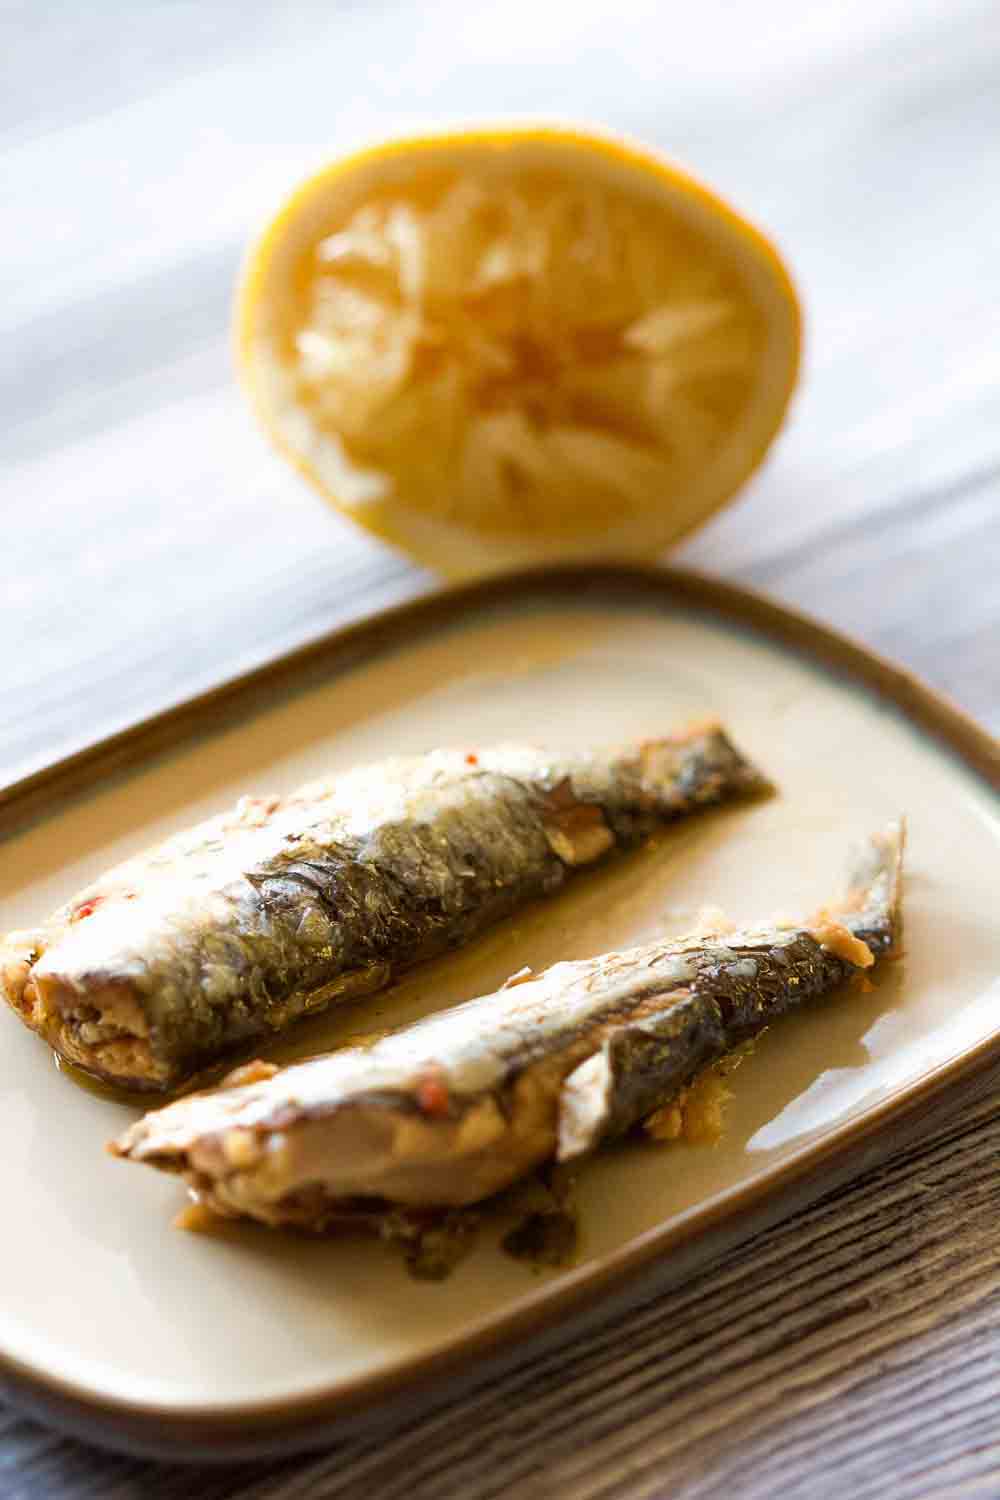 Plat de sardines, riche en bons acides gras